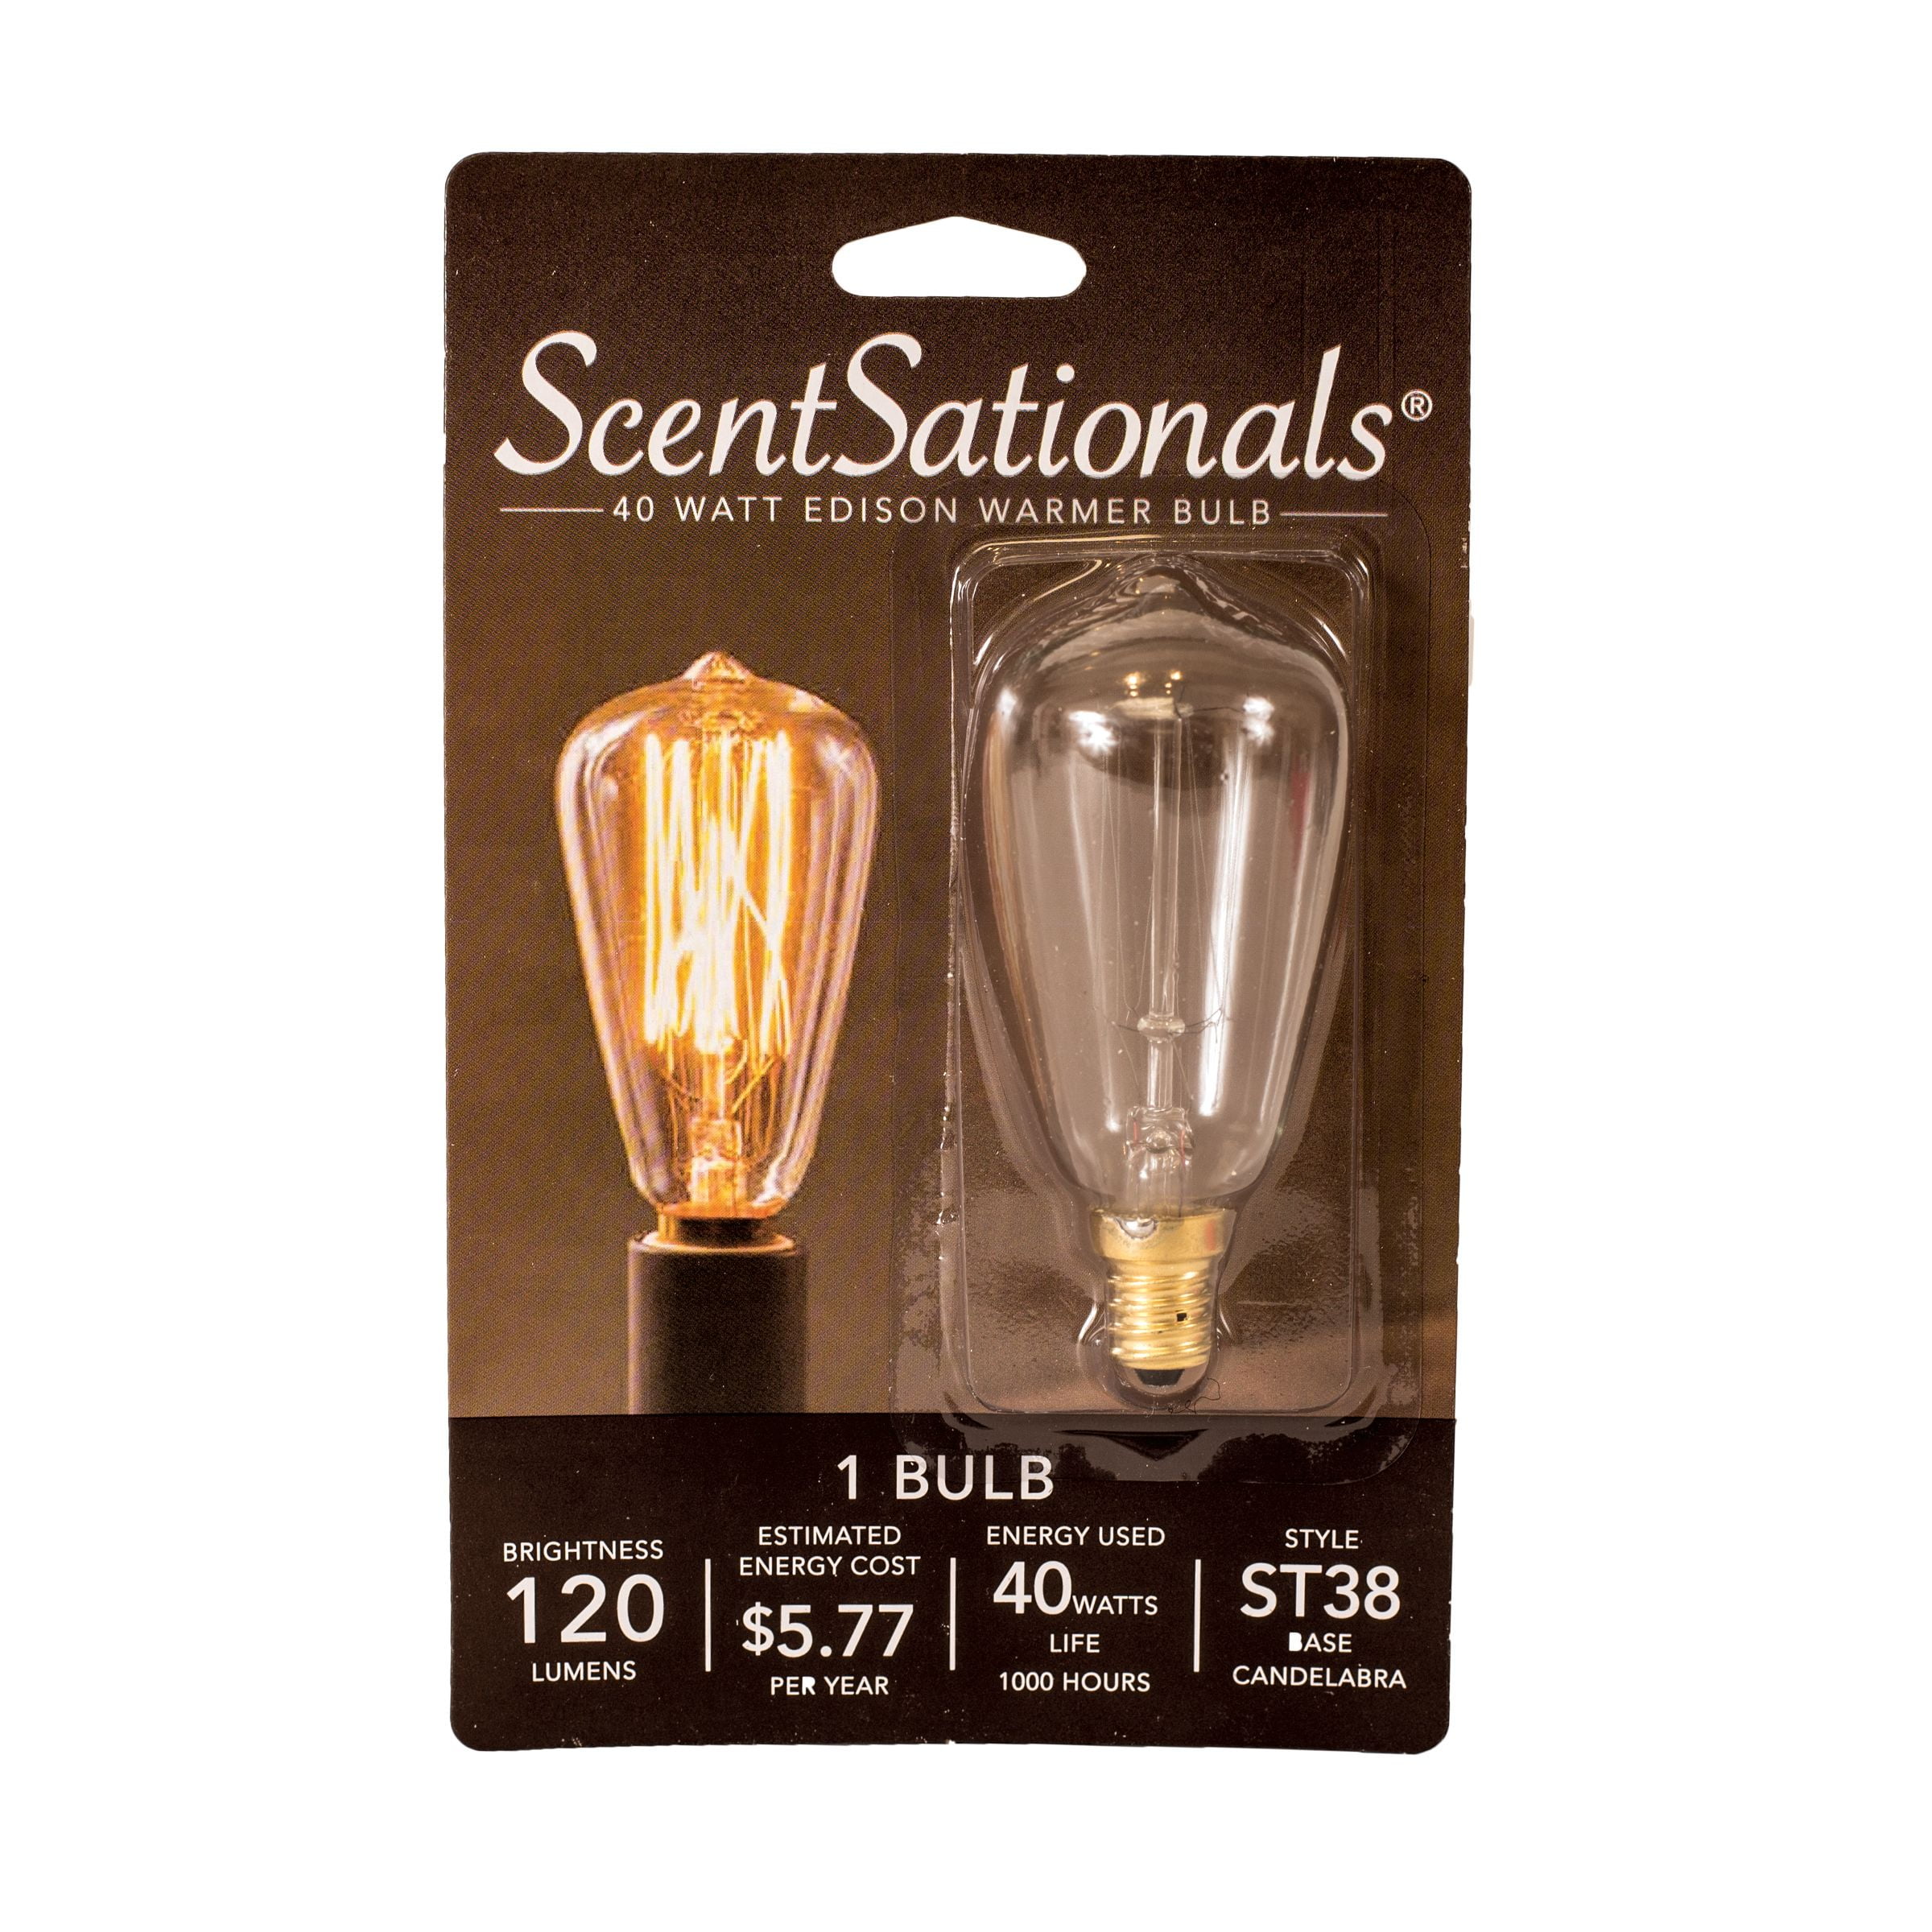 ScentSationals 40 Watt Edison Wax Warmer Replacement Light Bulb